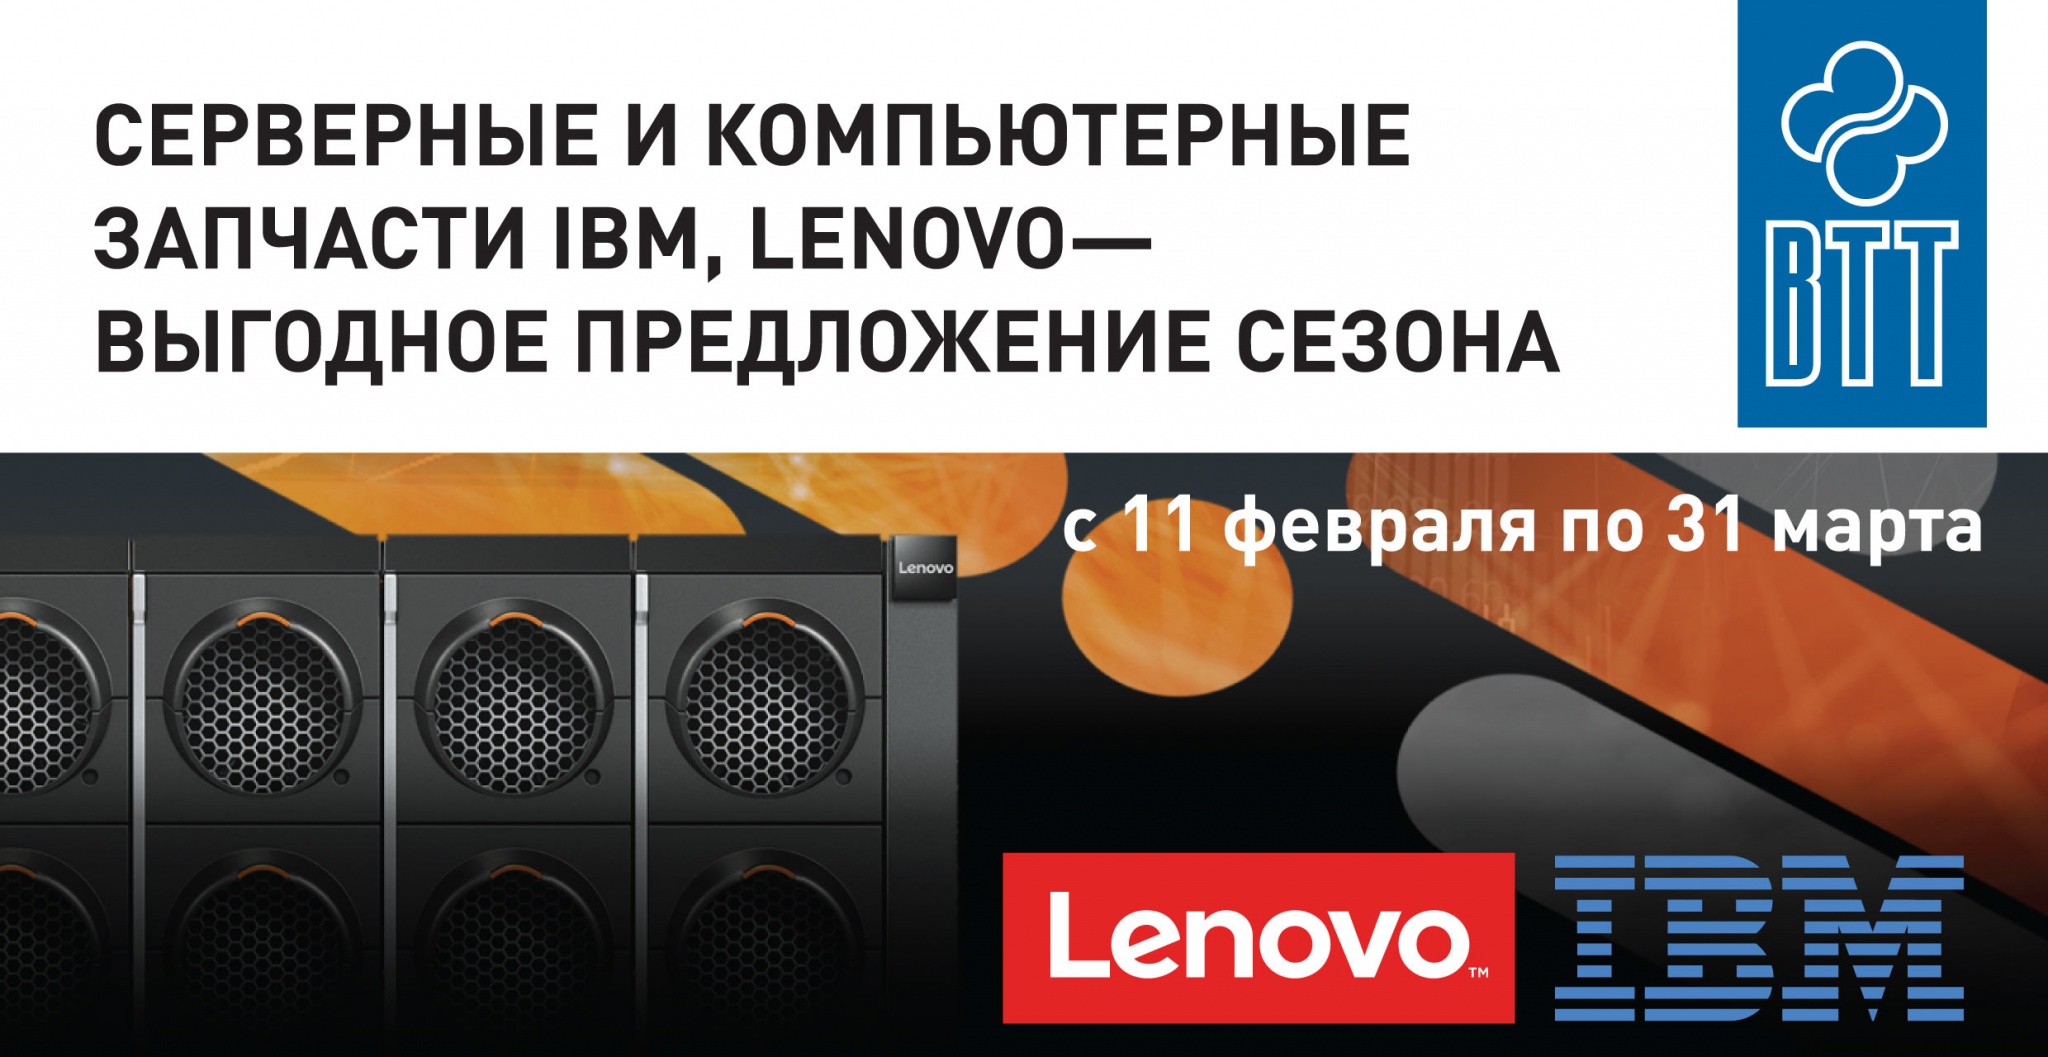 Серверные-и-компьютерные-запчасти-IBM-Lenovo-выгодное-предложение-сезона.jpg